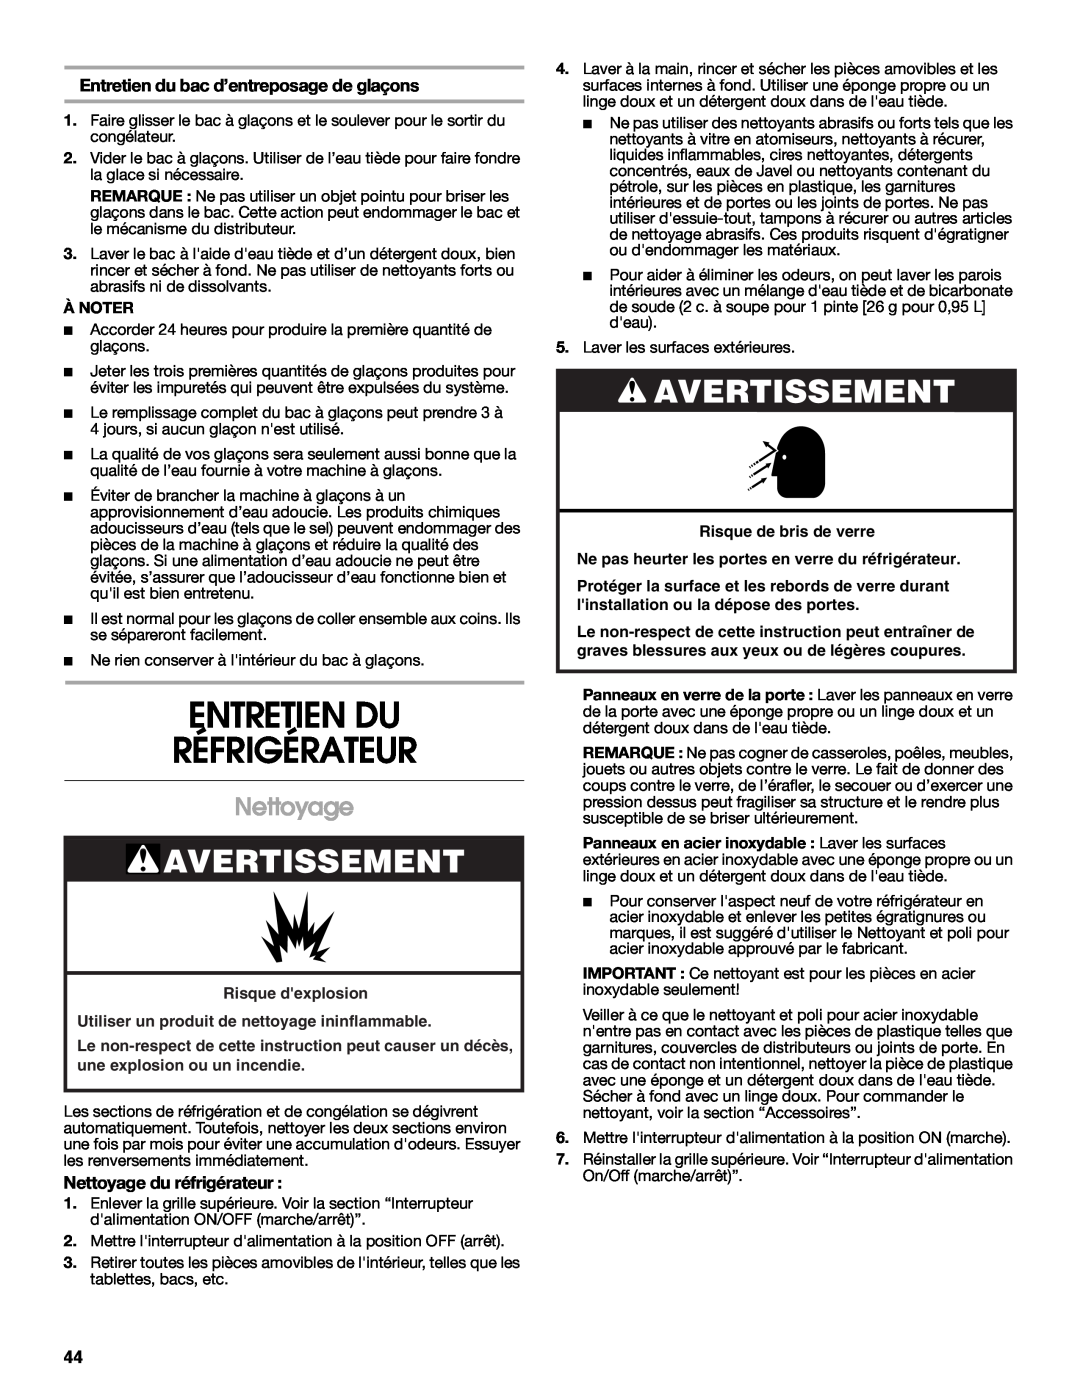 Jenn-Air W10231365B manual Entretien Du Réfrigérateur, Nettoyage, Entretien du bac d’entreposage de glaçons, Avertissement 